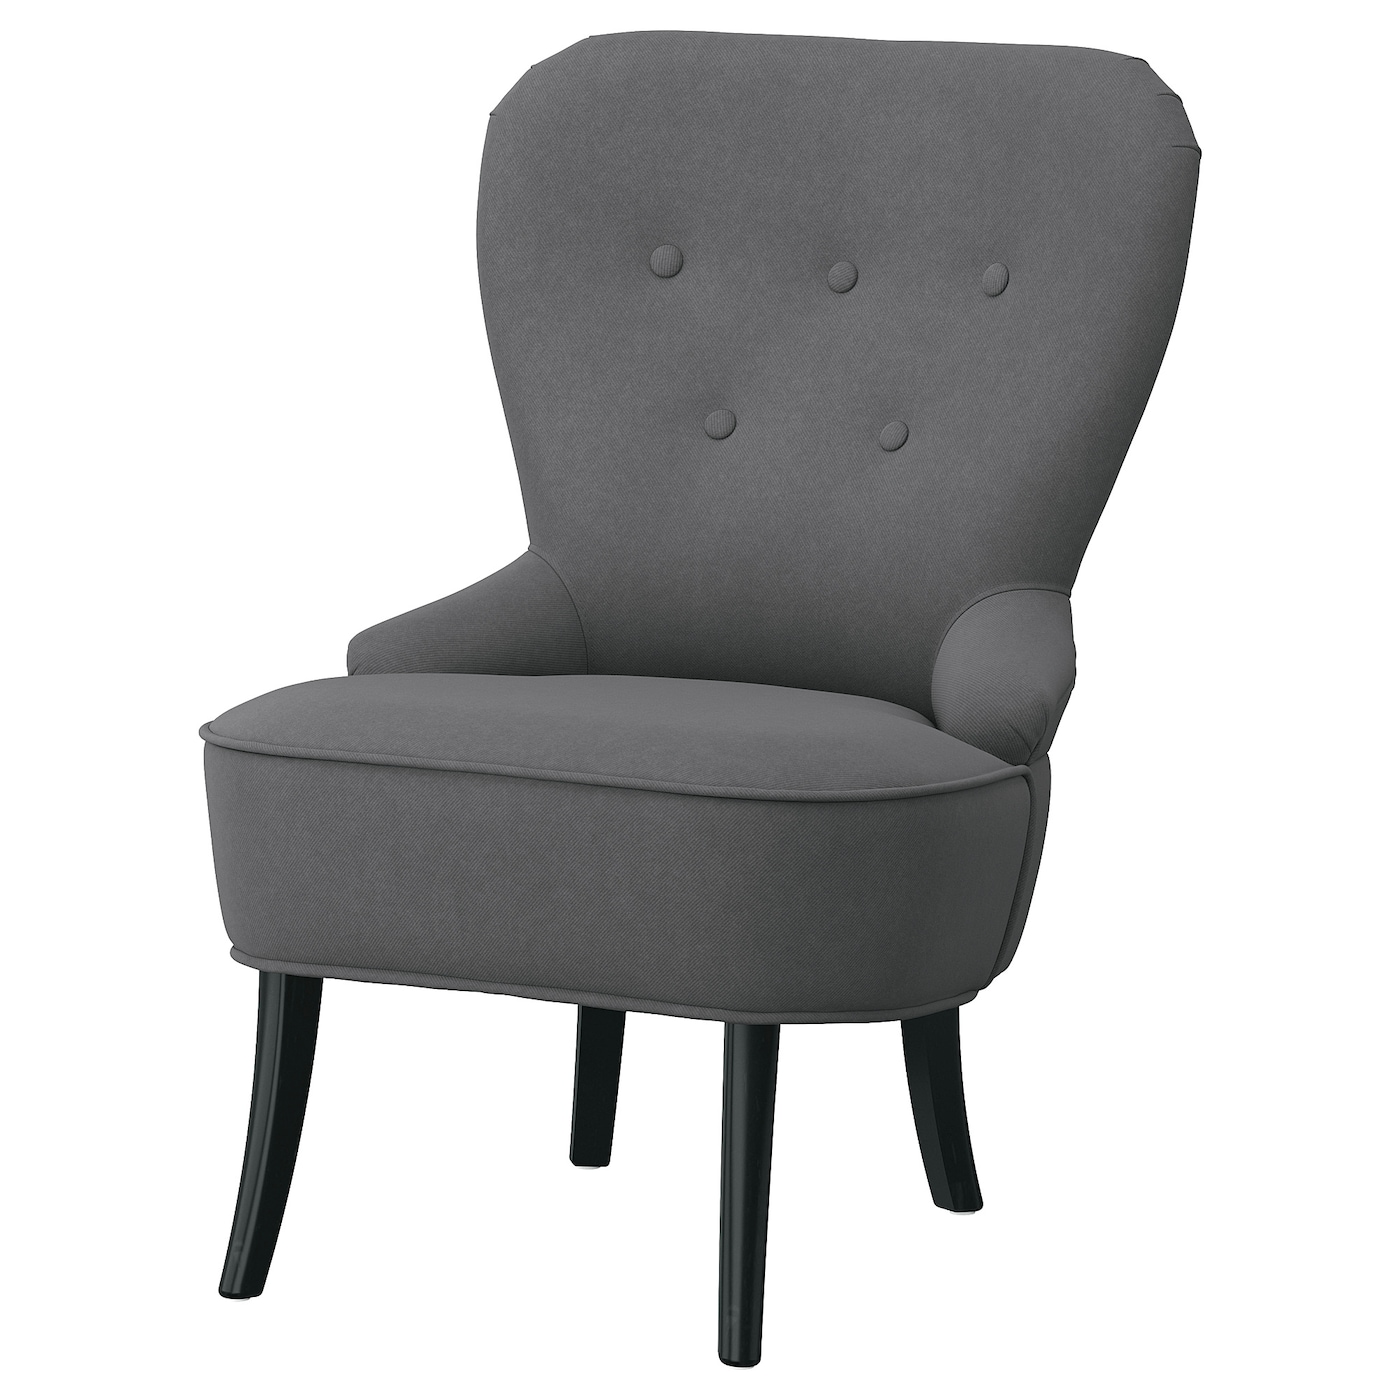 Кресло с подголовником - IKEA REMSTA, 60х72х88 см, серый/черный, РЕМСТА ИКЕА